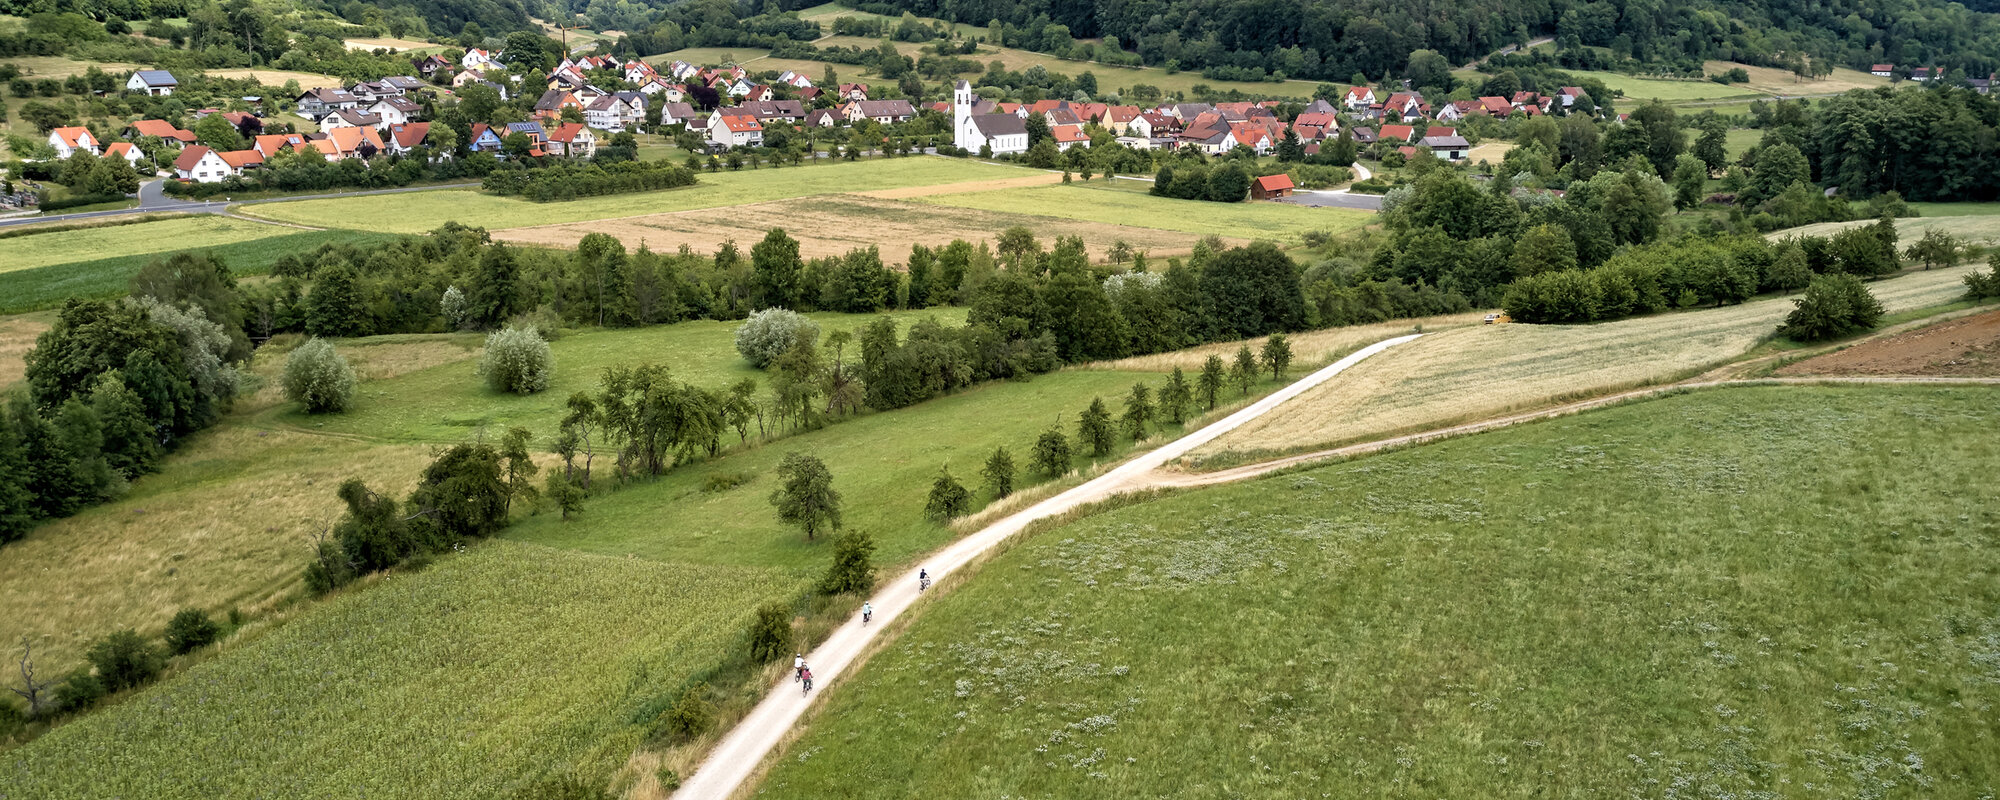 Im Vordergrund fahren vier Radfahrer auf einem Feldweg. Im Hintergrund ist ein Ort in Tallage vor bewaldeten Hügeln zu sehen.